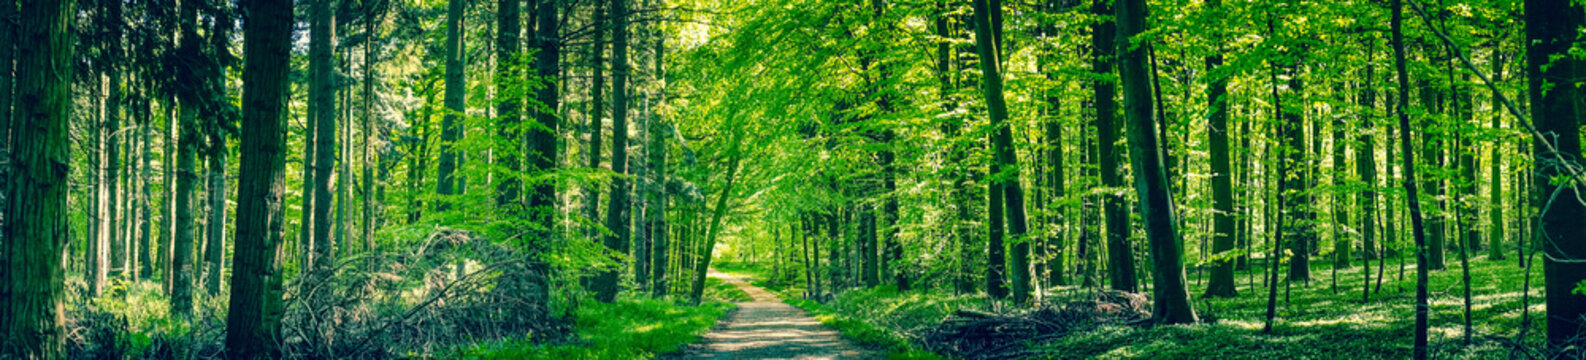 Fototapeta Zielone drzewa leśną ścieżką